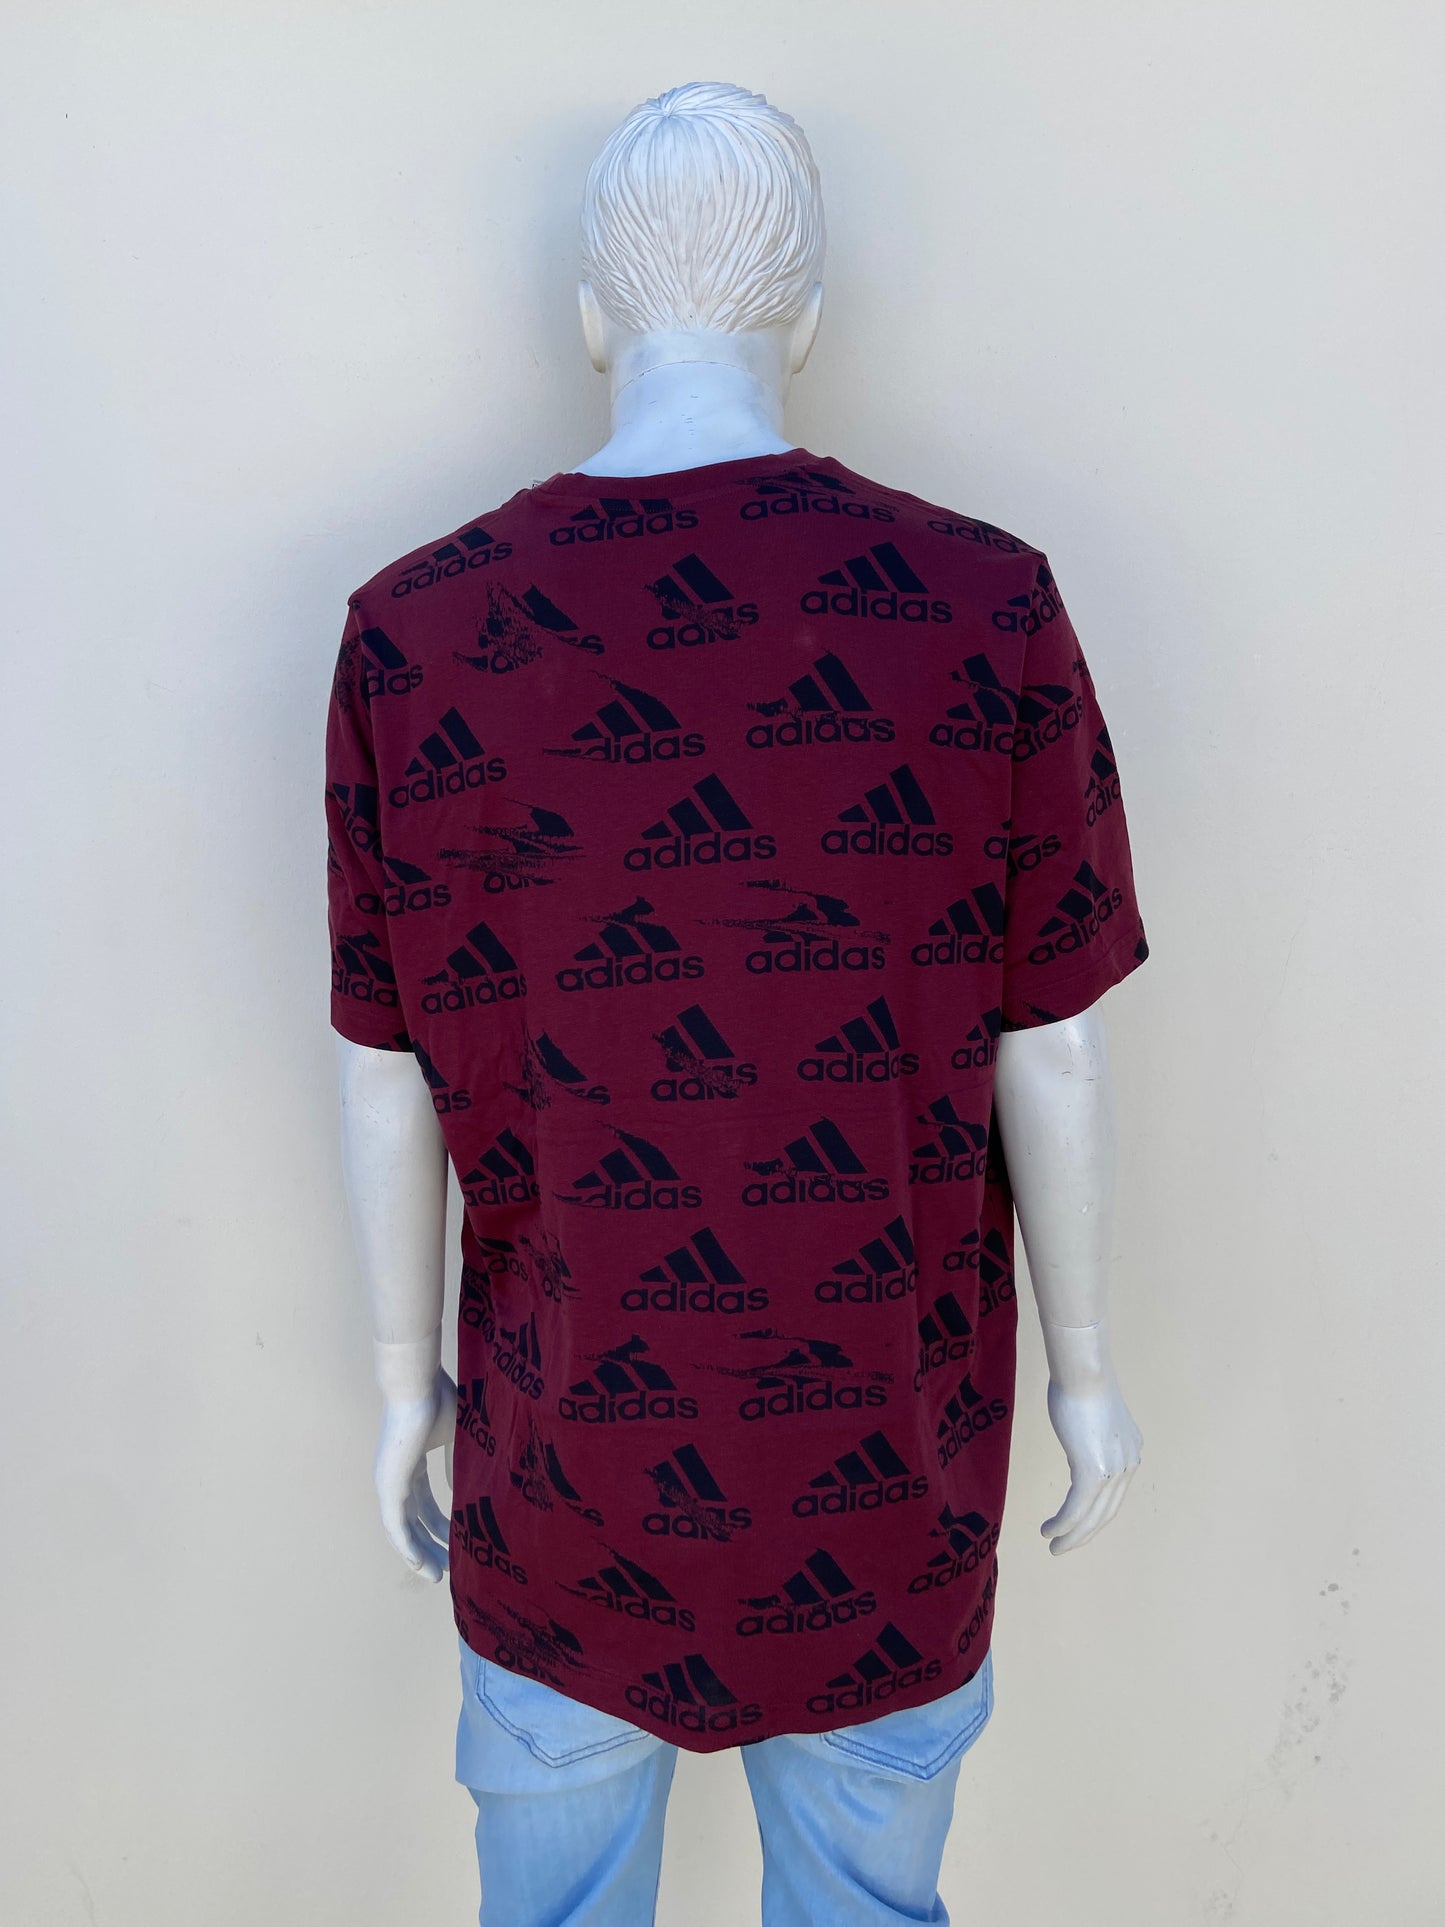 T-shirt Adidas original rojo vino con estampado de la marca en color negro.